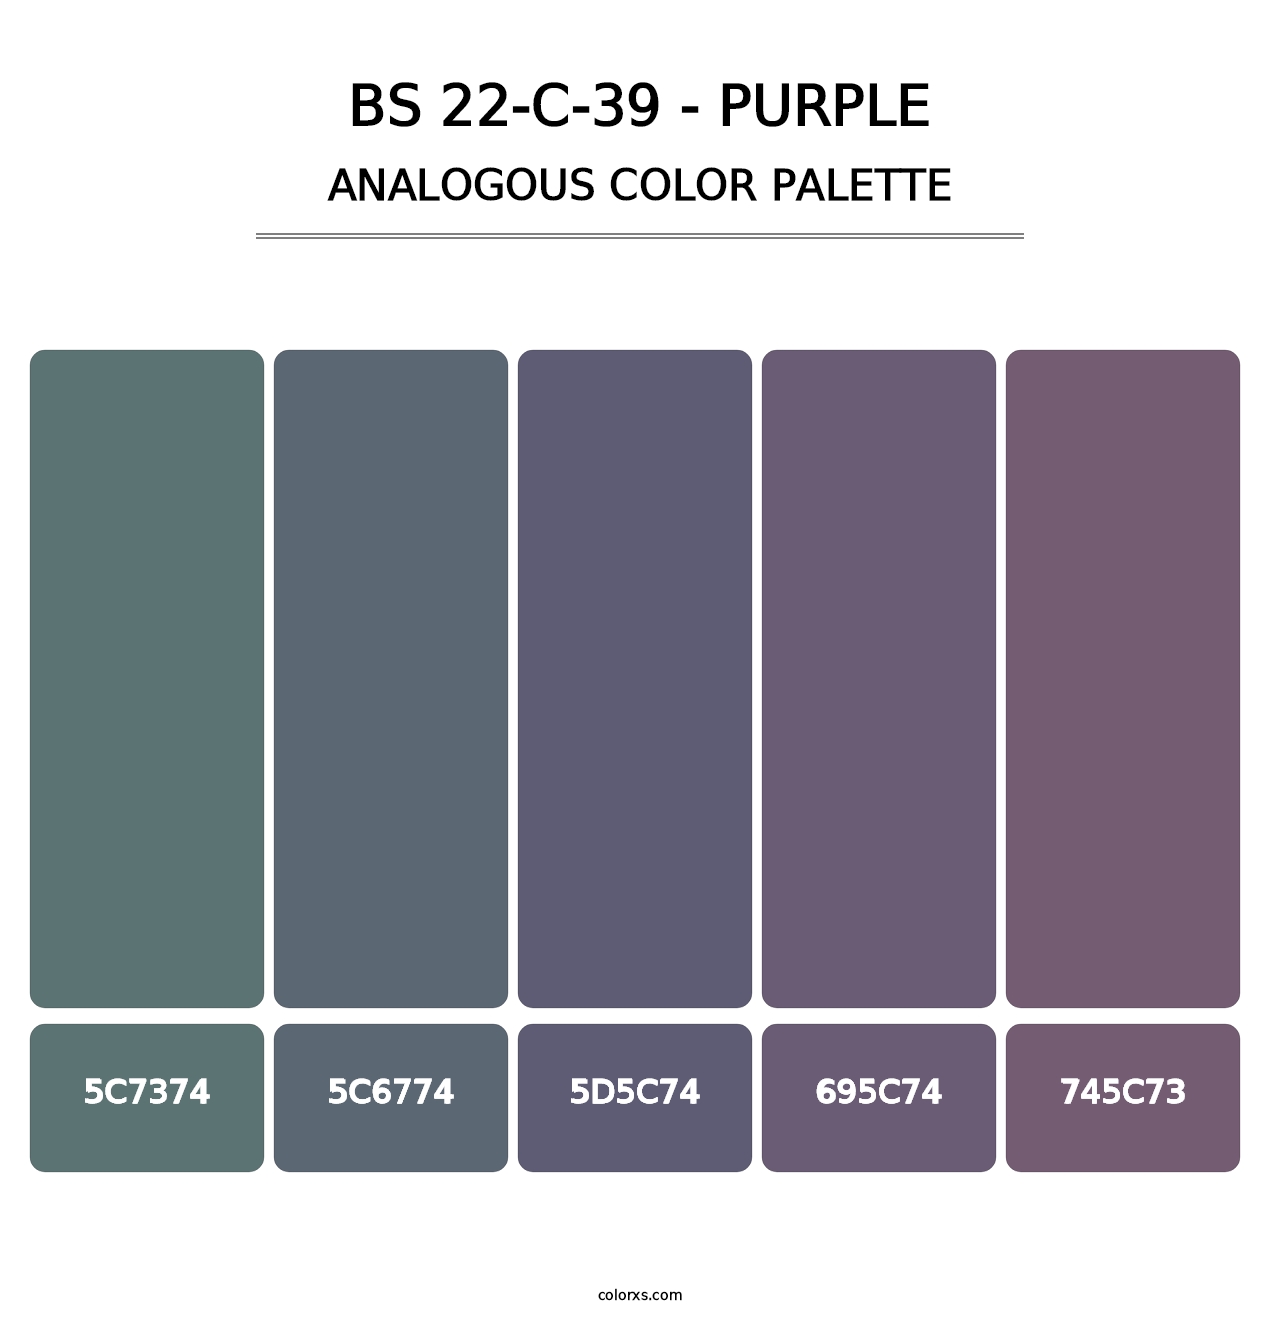 BS 22-C-39 - Purple - Analogous Color Palette